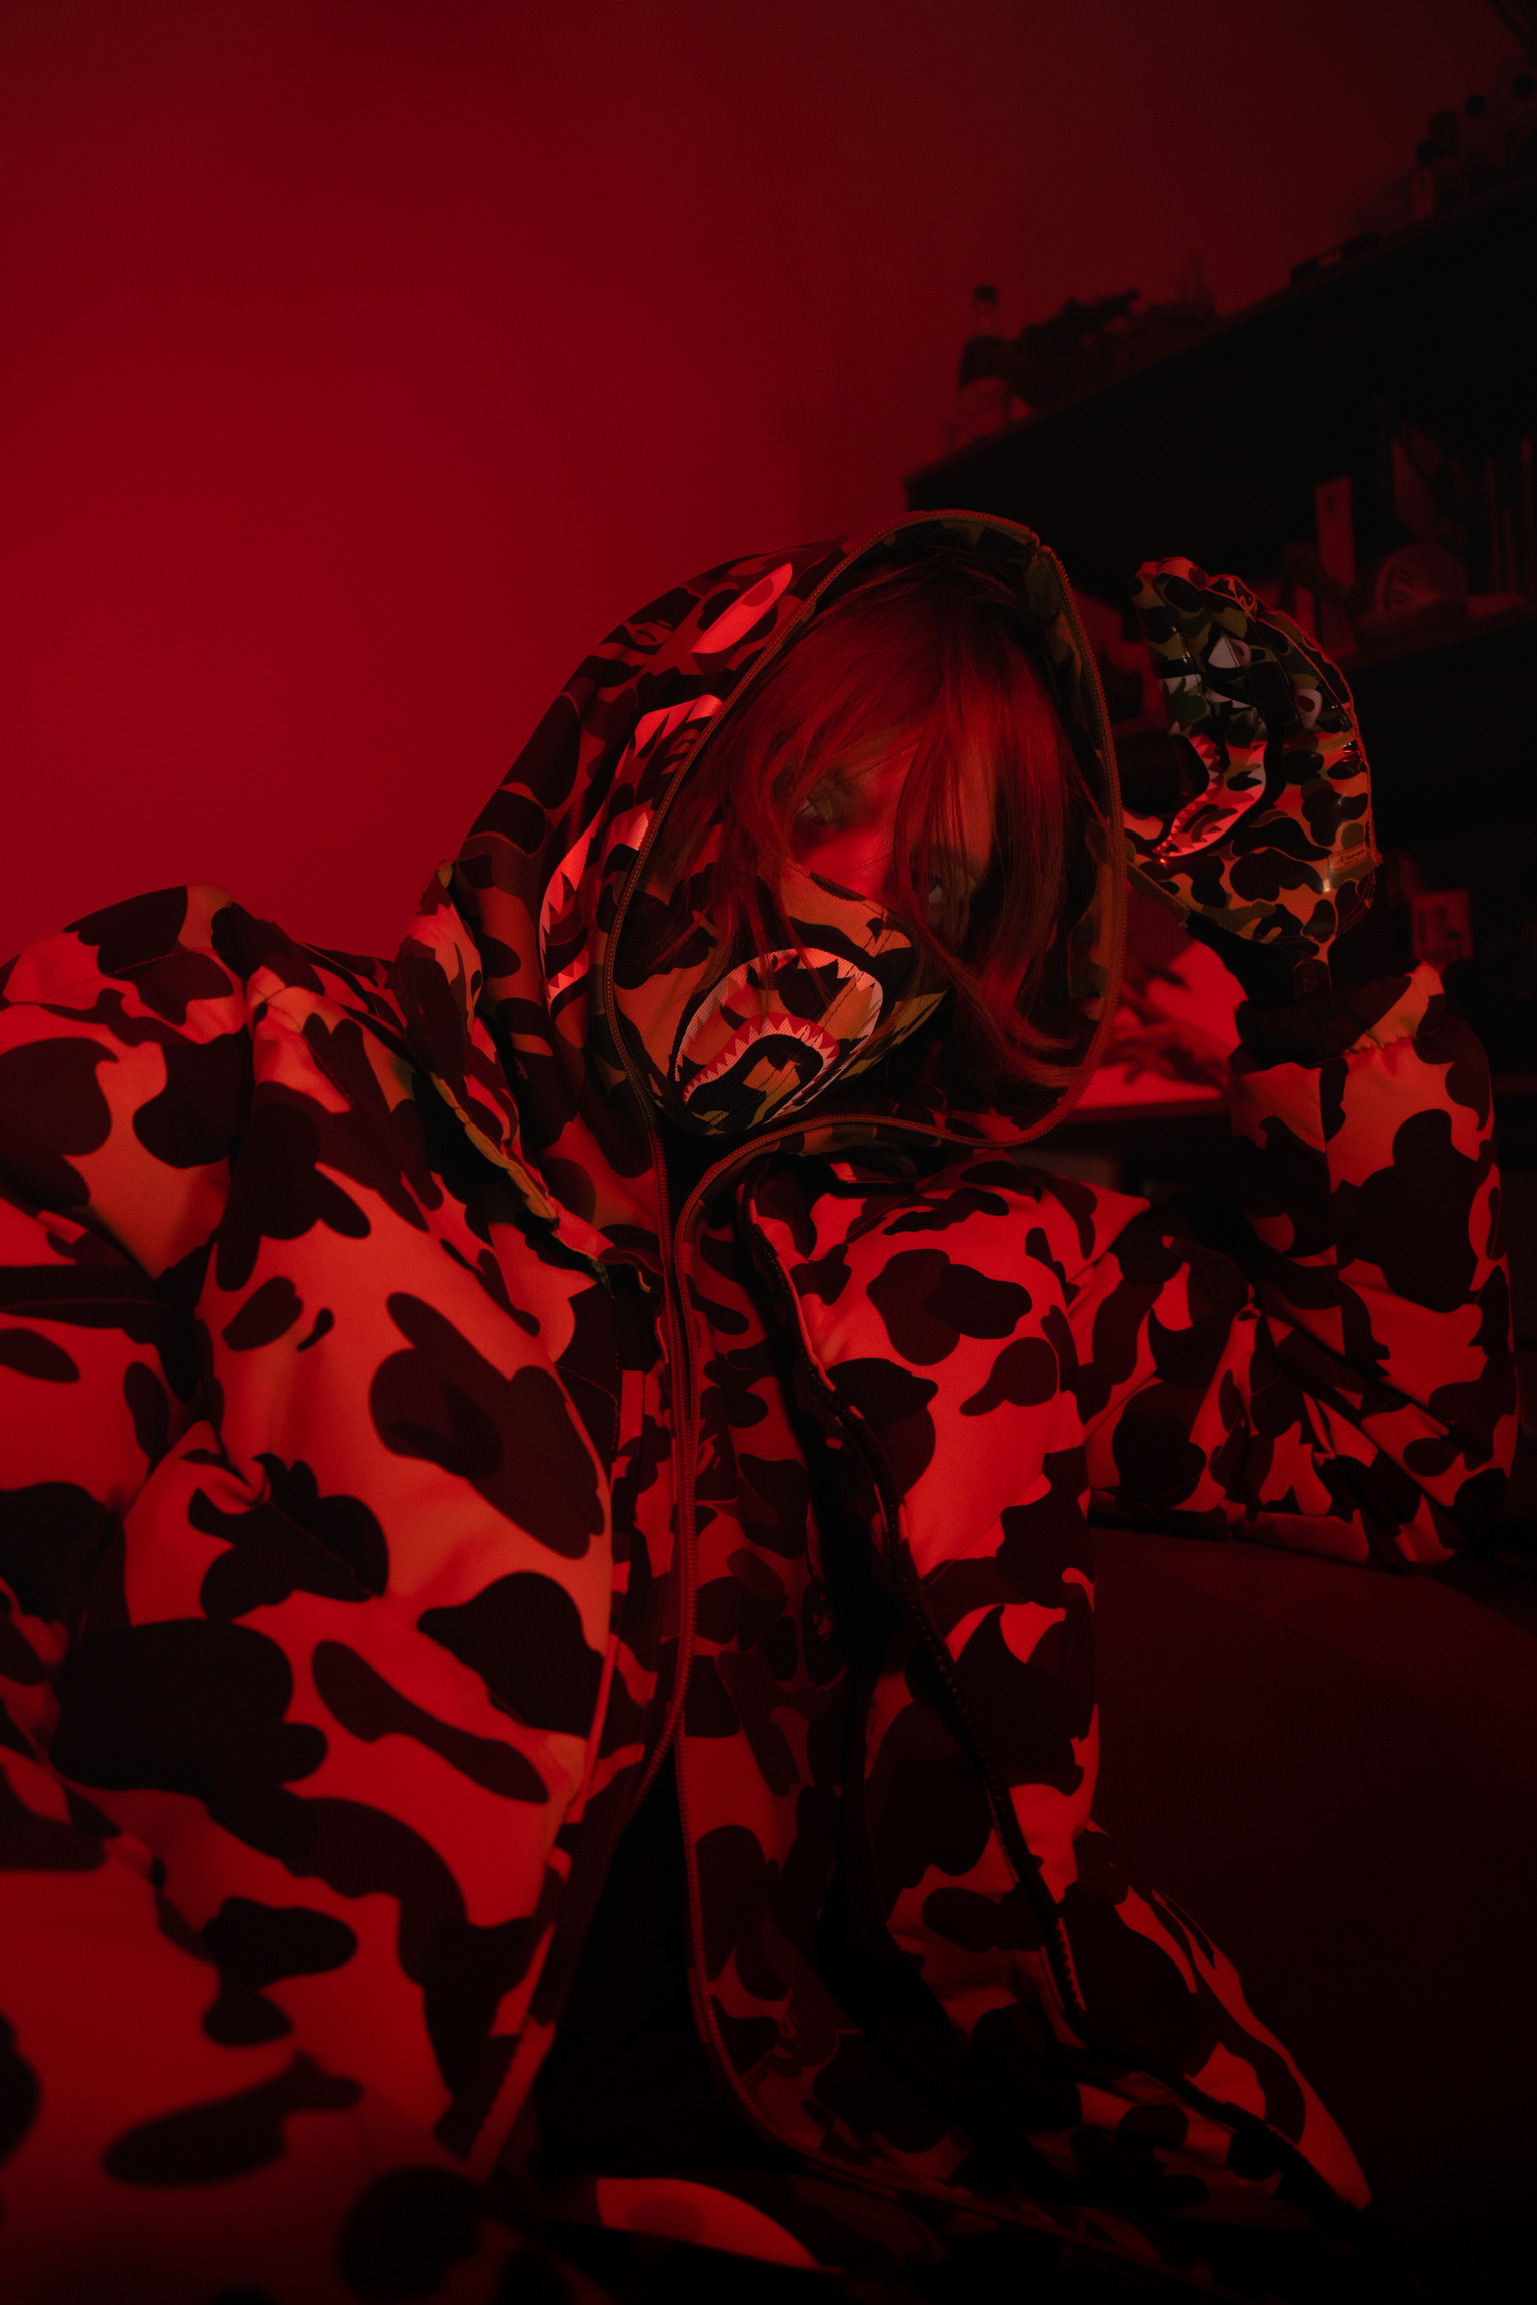 Photo de l'artiste Sixth dans une ambiance très rouge et sombre, il porte une veste camouflage et une capuche